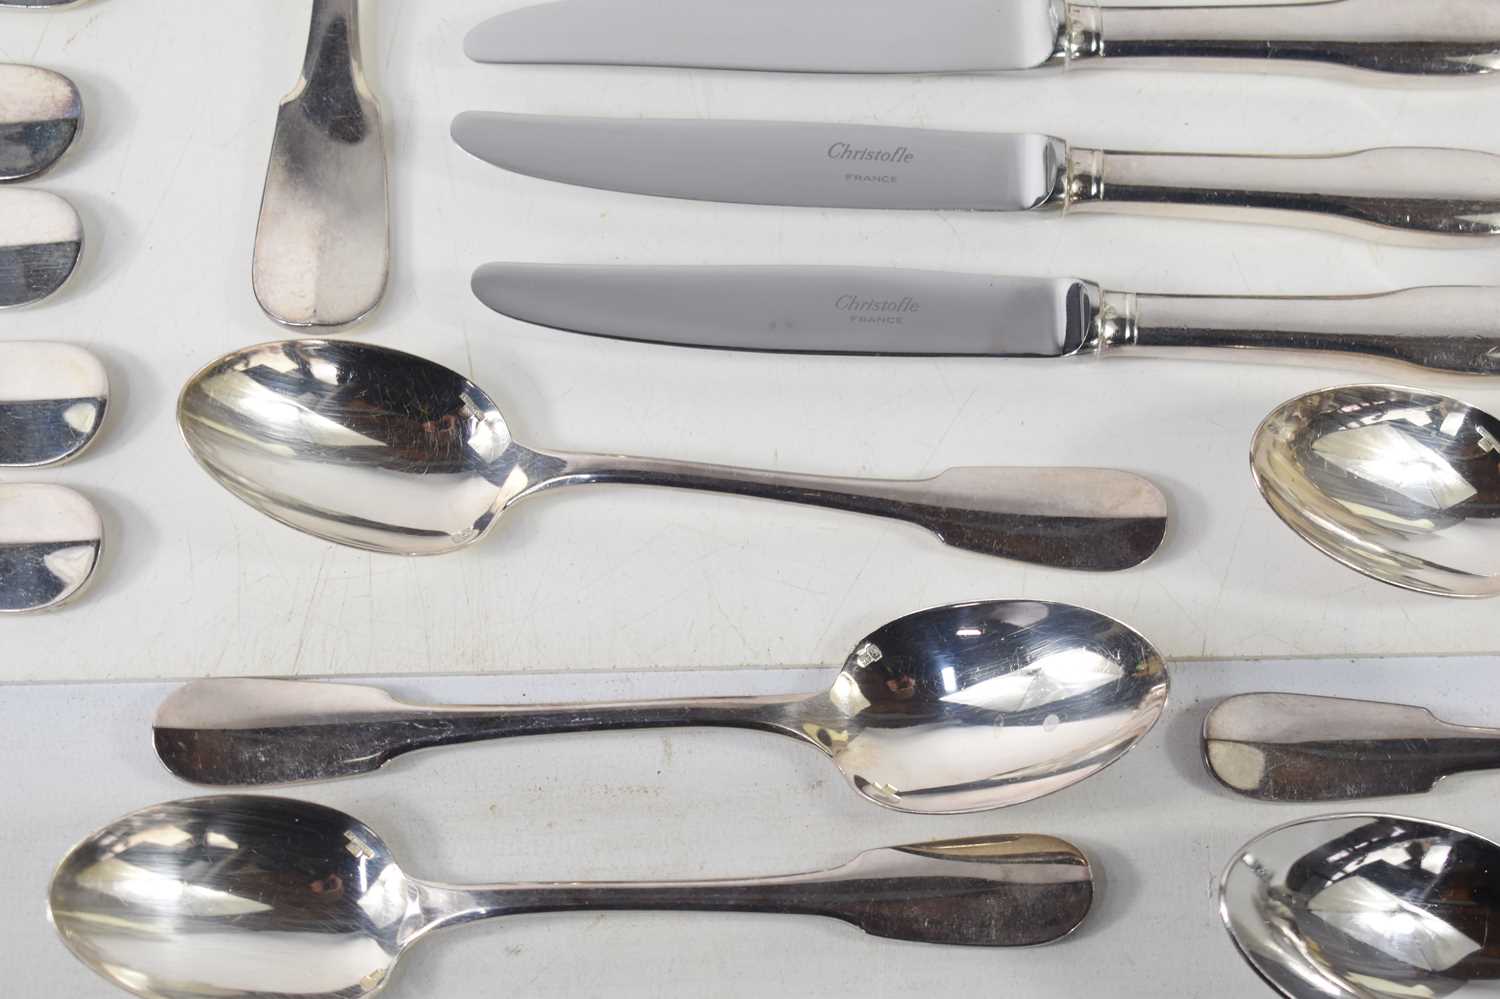 A set of Christofle plated flatwares comprising eight knives, butter knives, forks, dessert forks, - Image 5 of 6